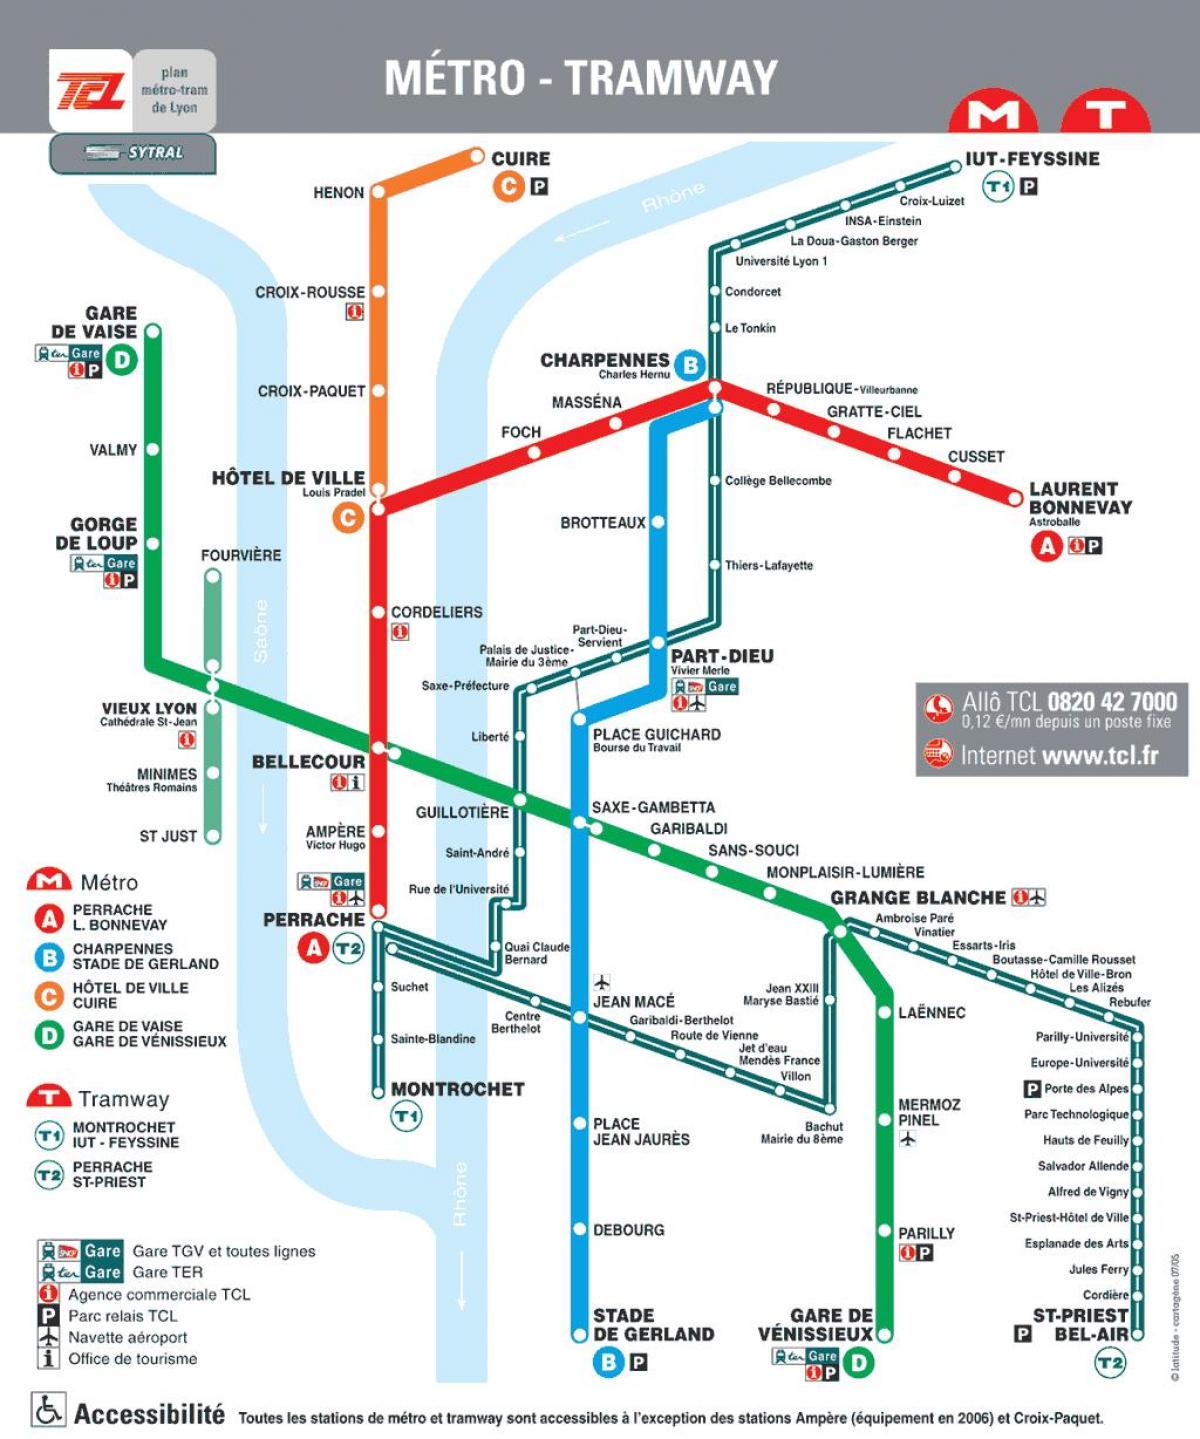 Лион метро мапата 2016 година